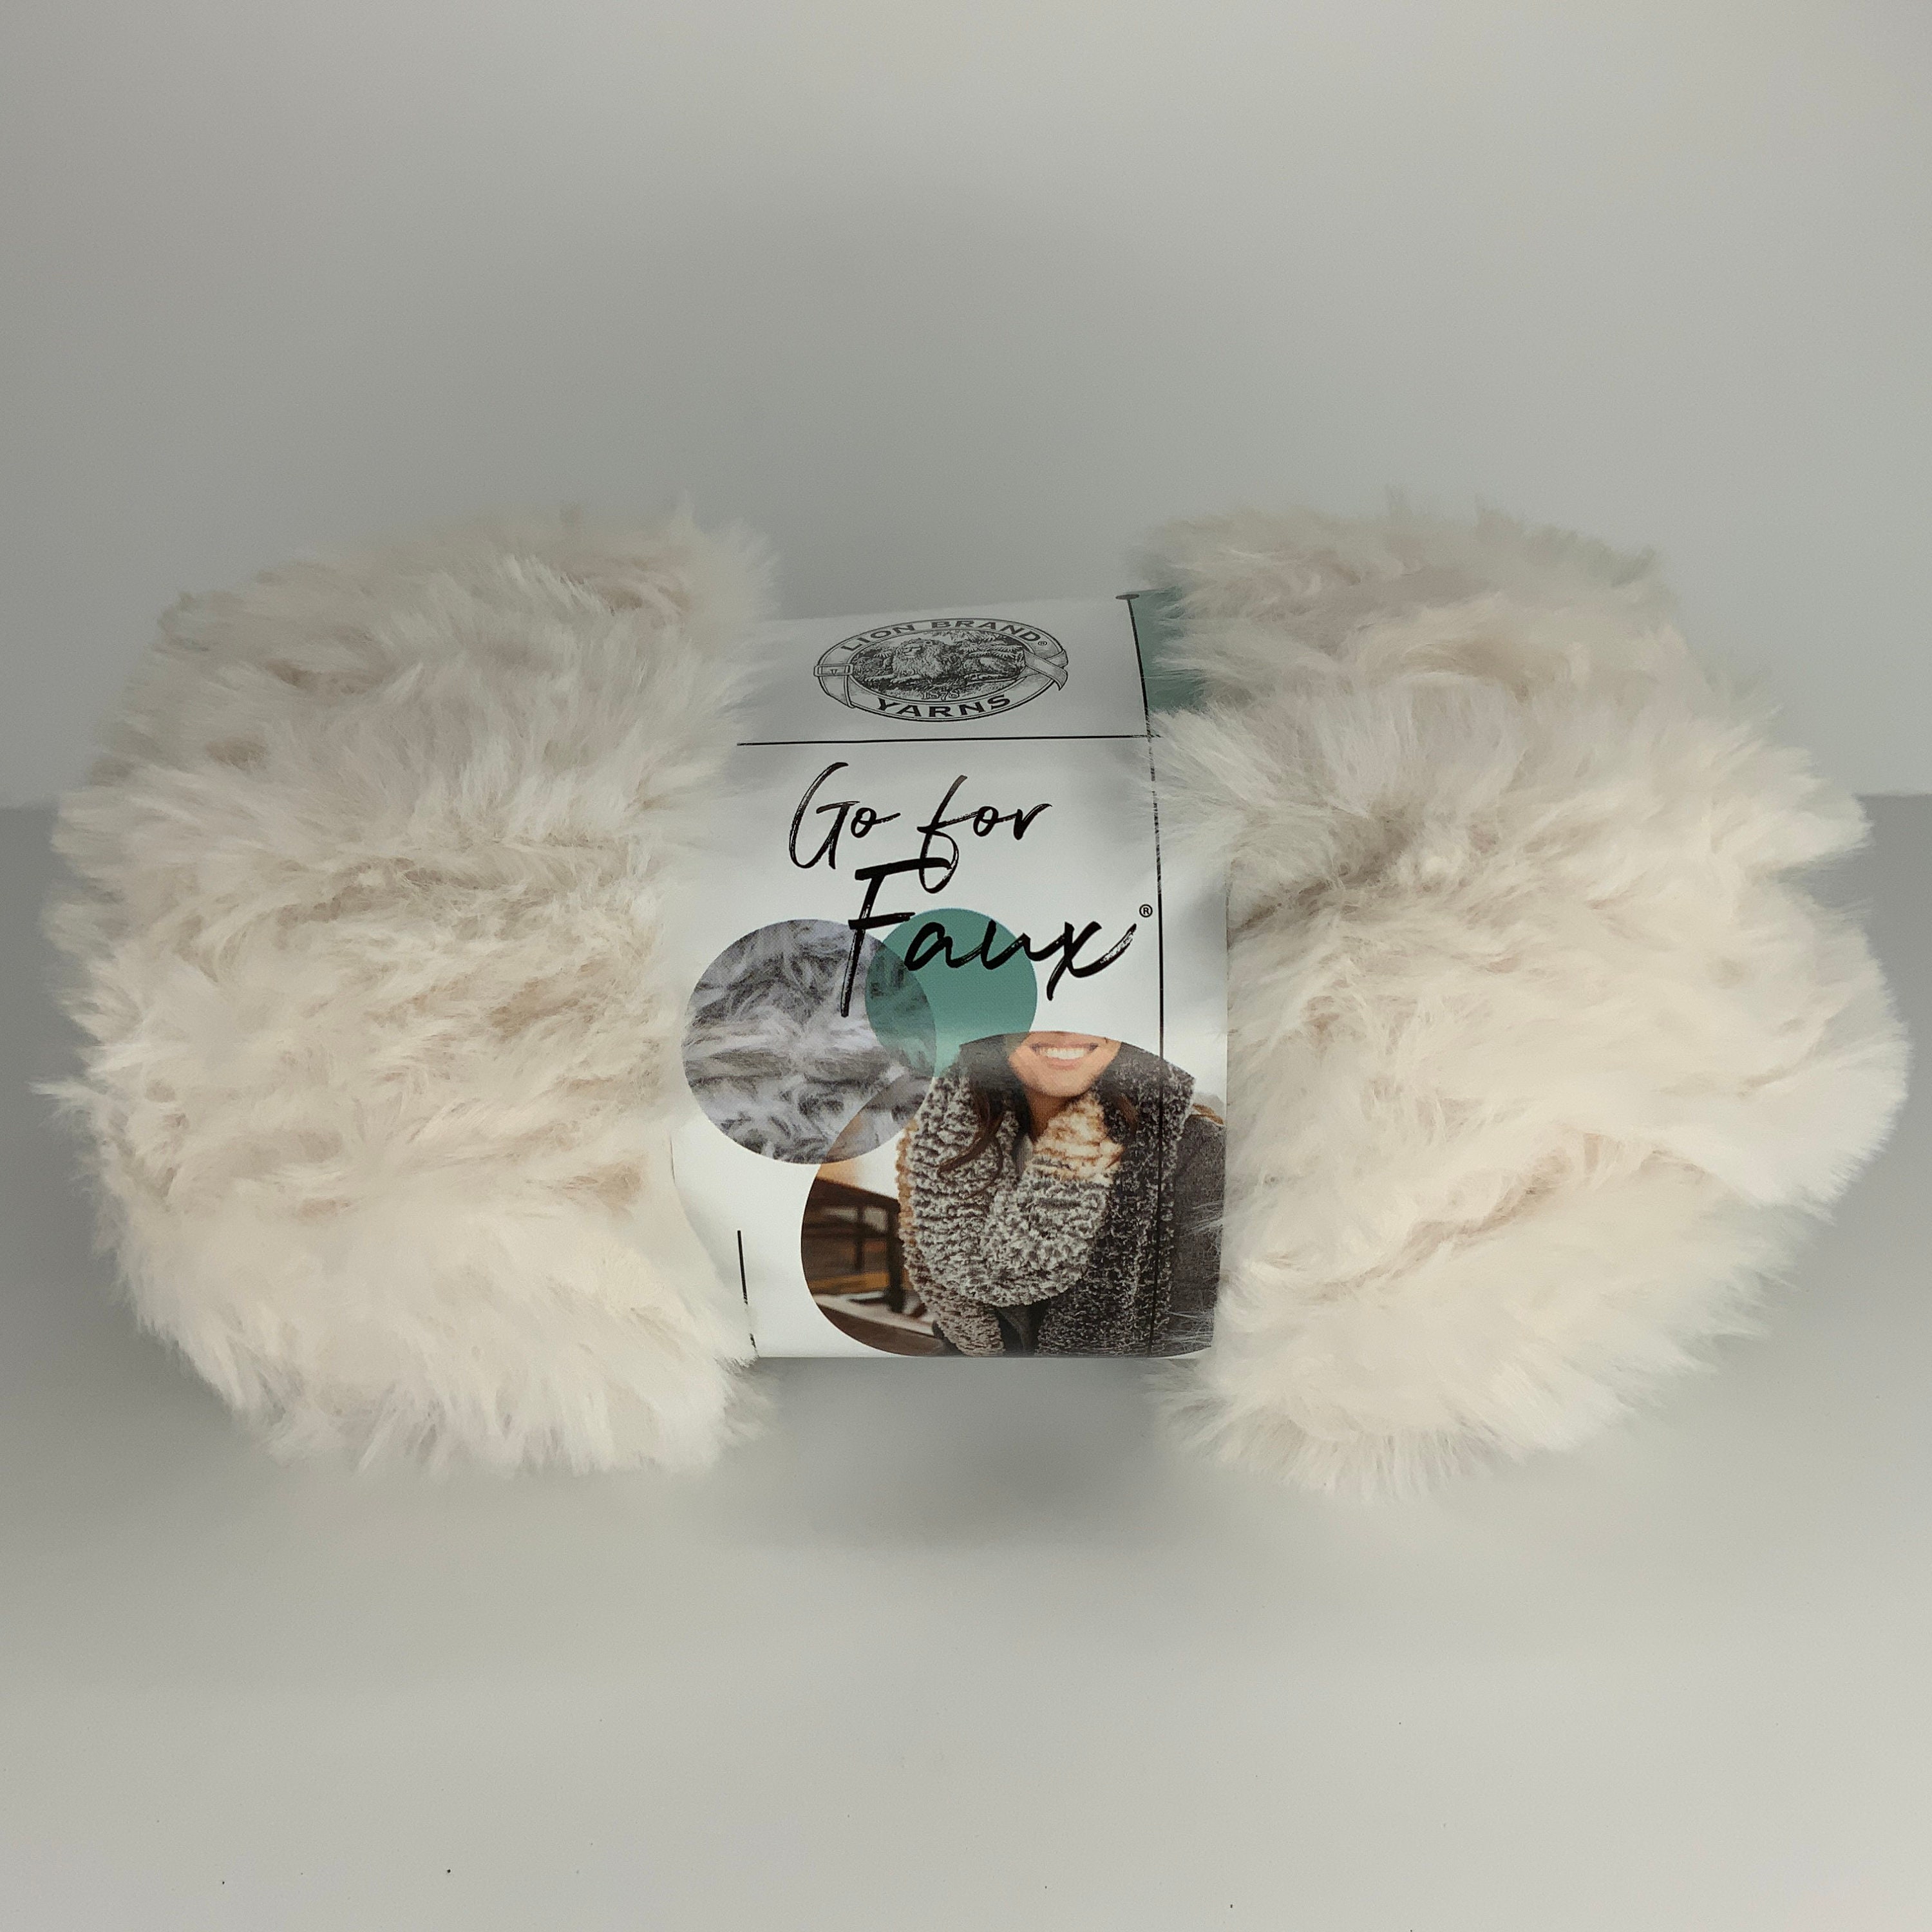 Fur Yarn Ultra Soft 50g One Skein 30m/32y Fluffy Yarn 100